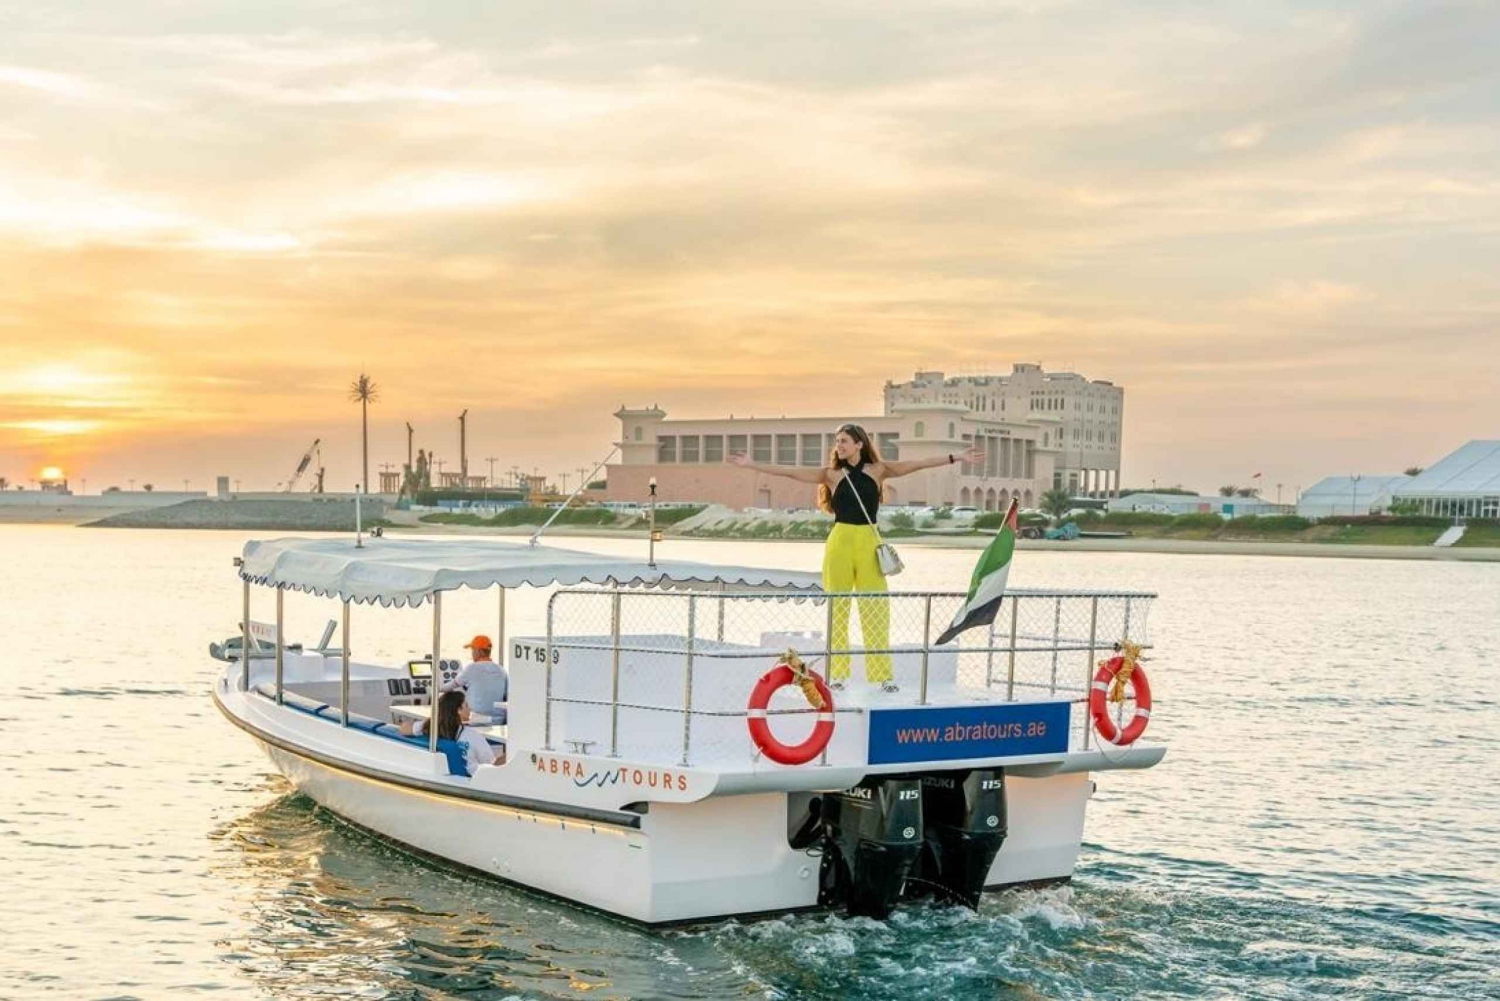 Dubai: Excursión en barco Abra al atardecer en Dubai Marina, Ain Dubai, JBR